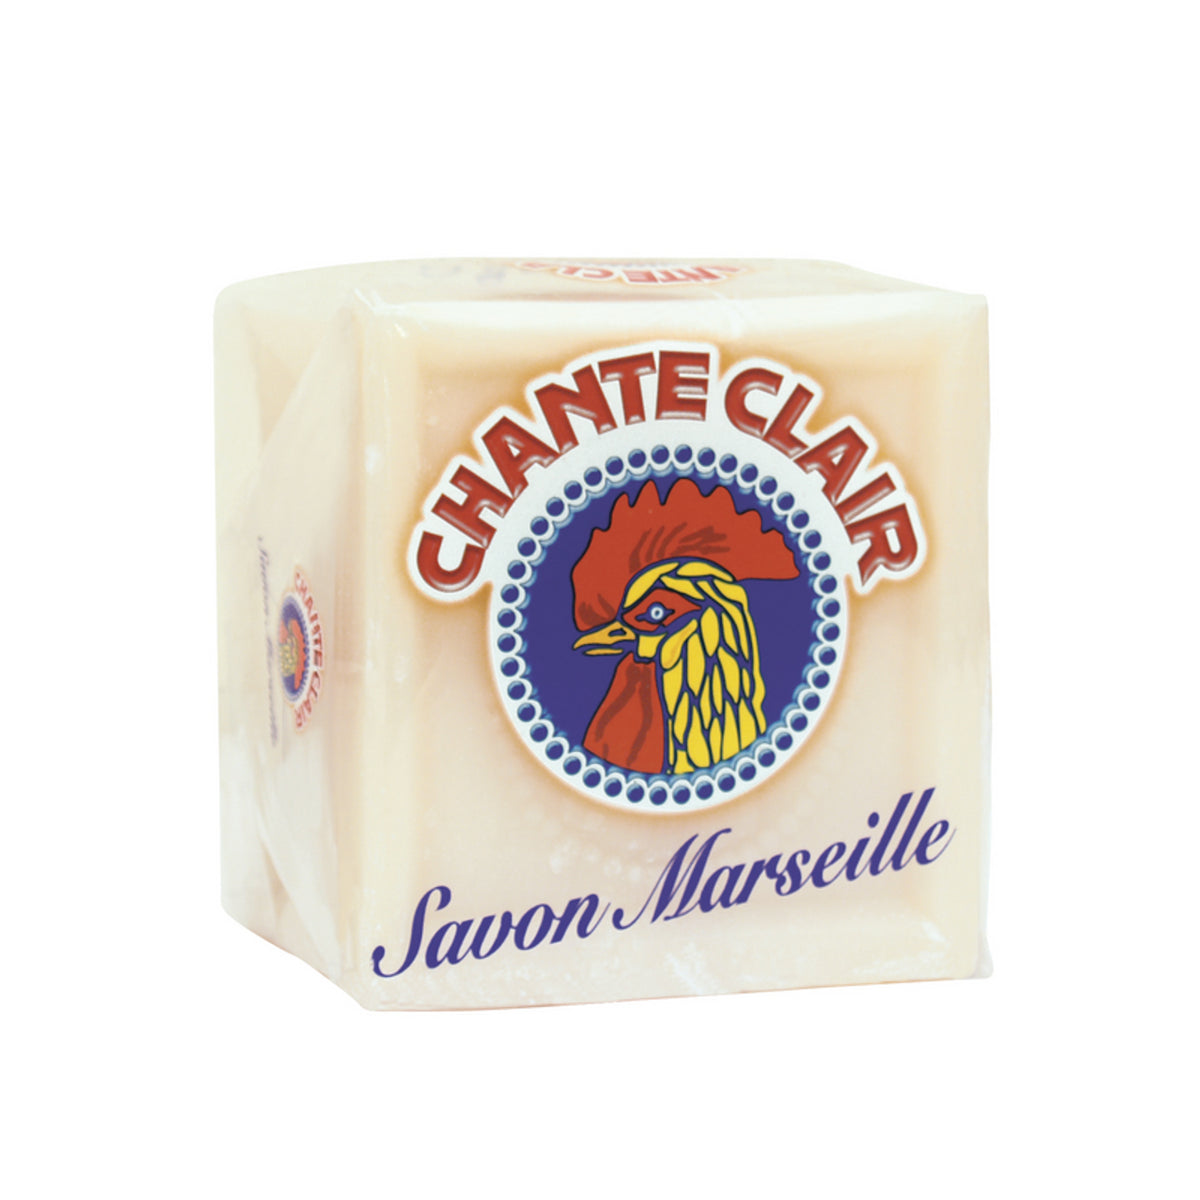 Chanteclair Soap Marseille Cube 250g